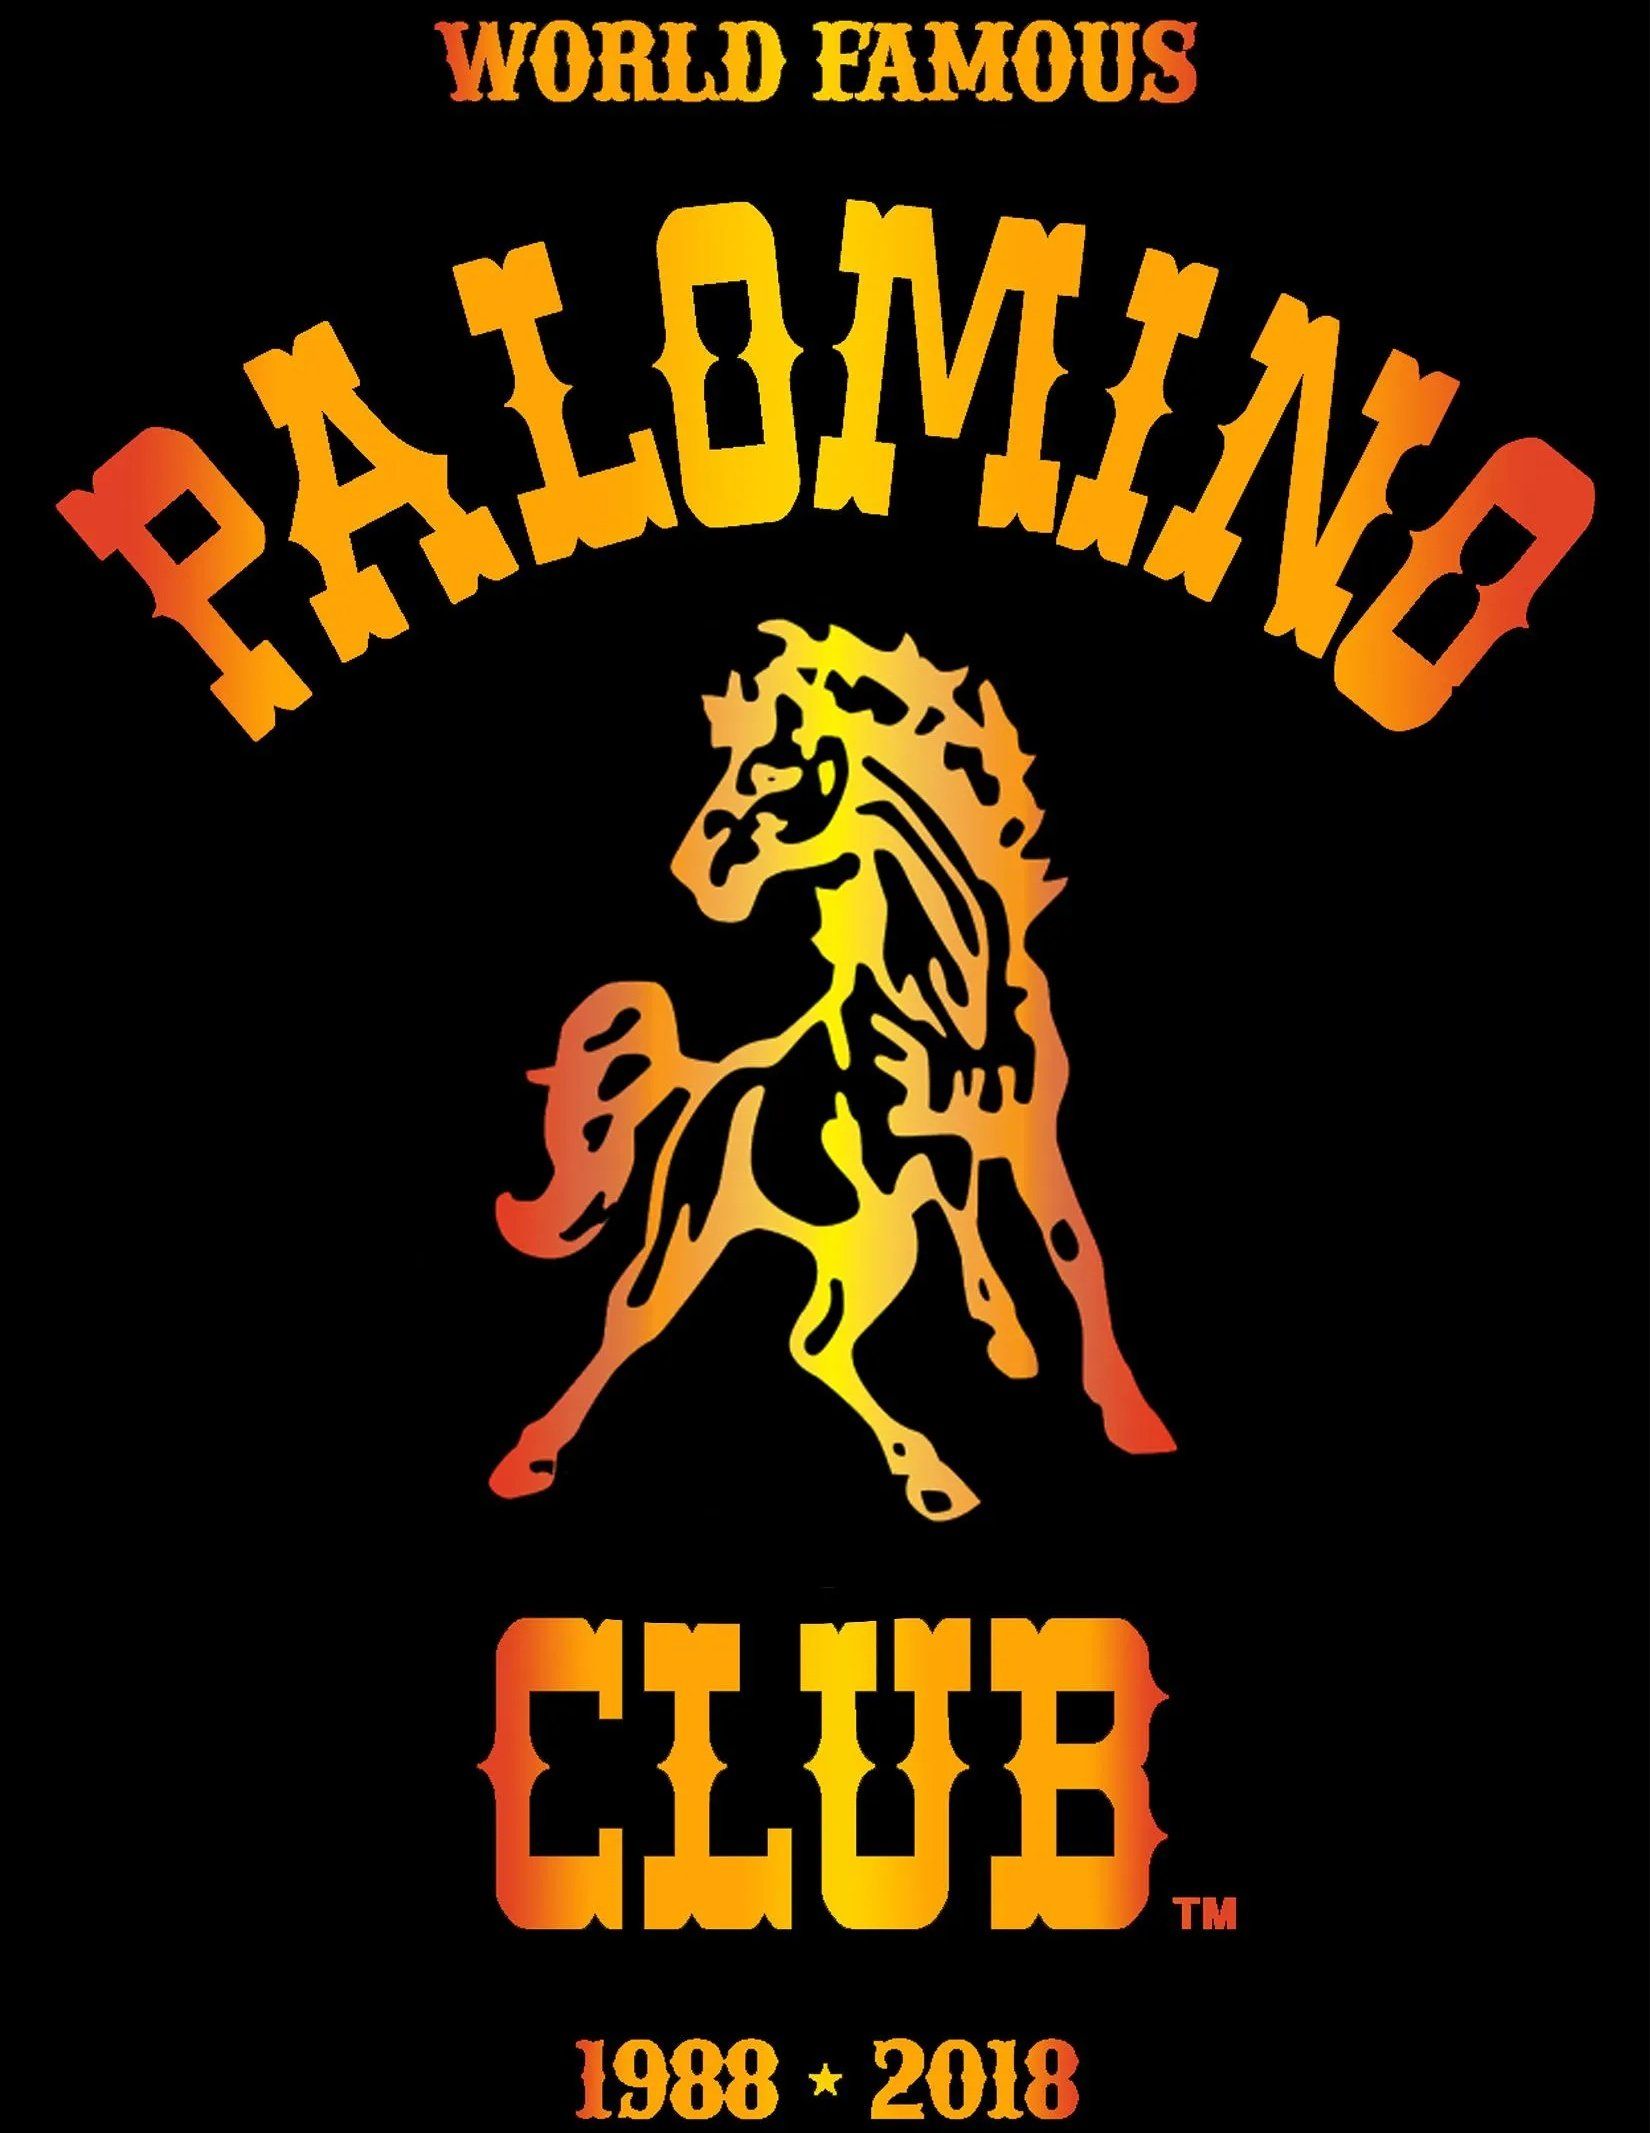 palomino club logo